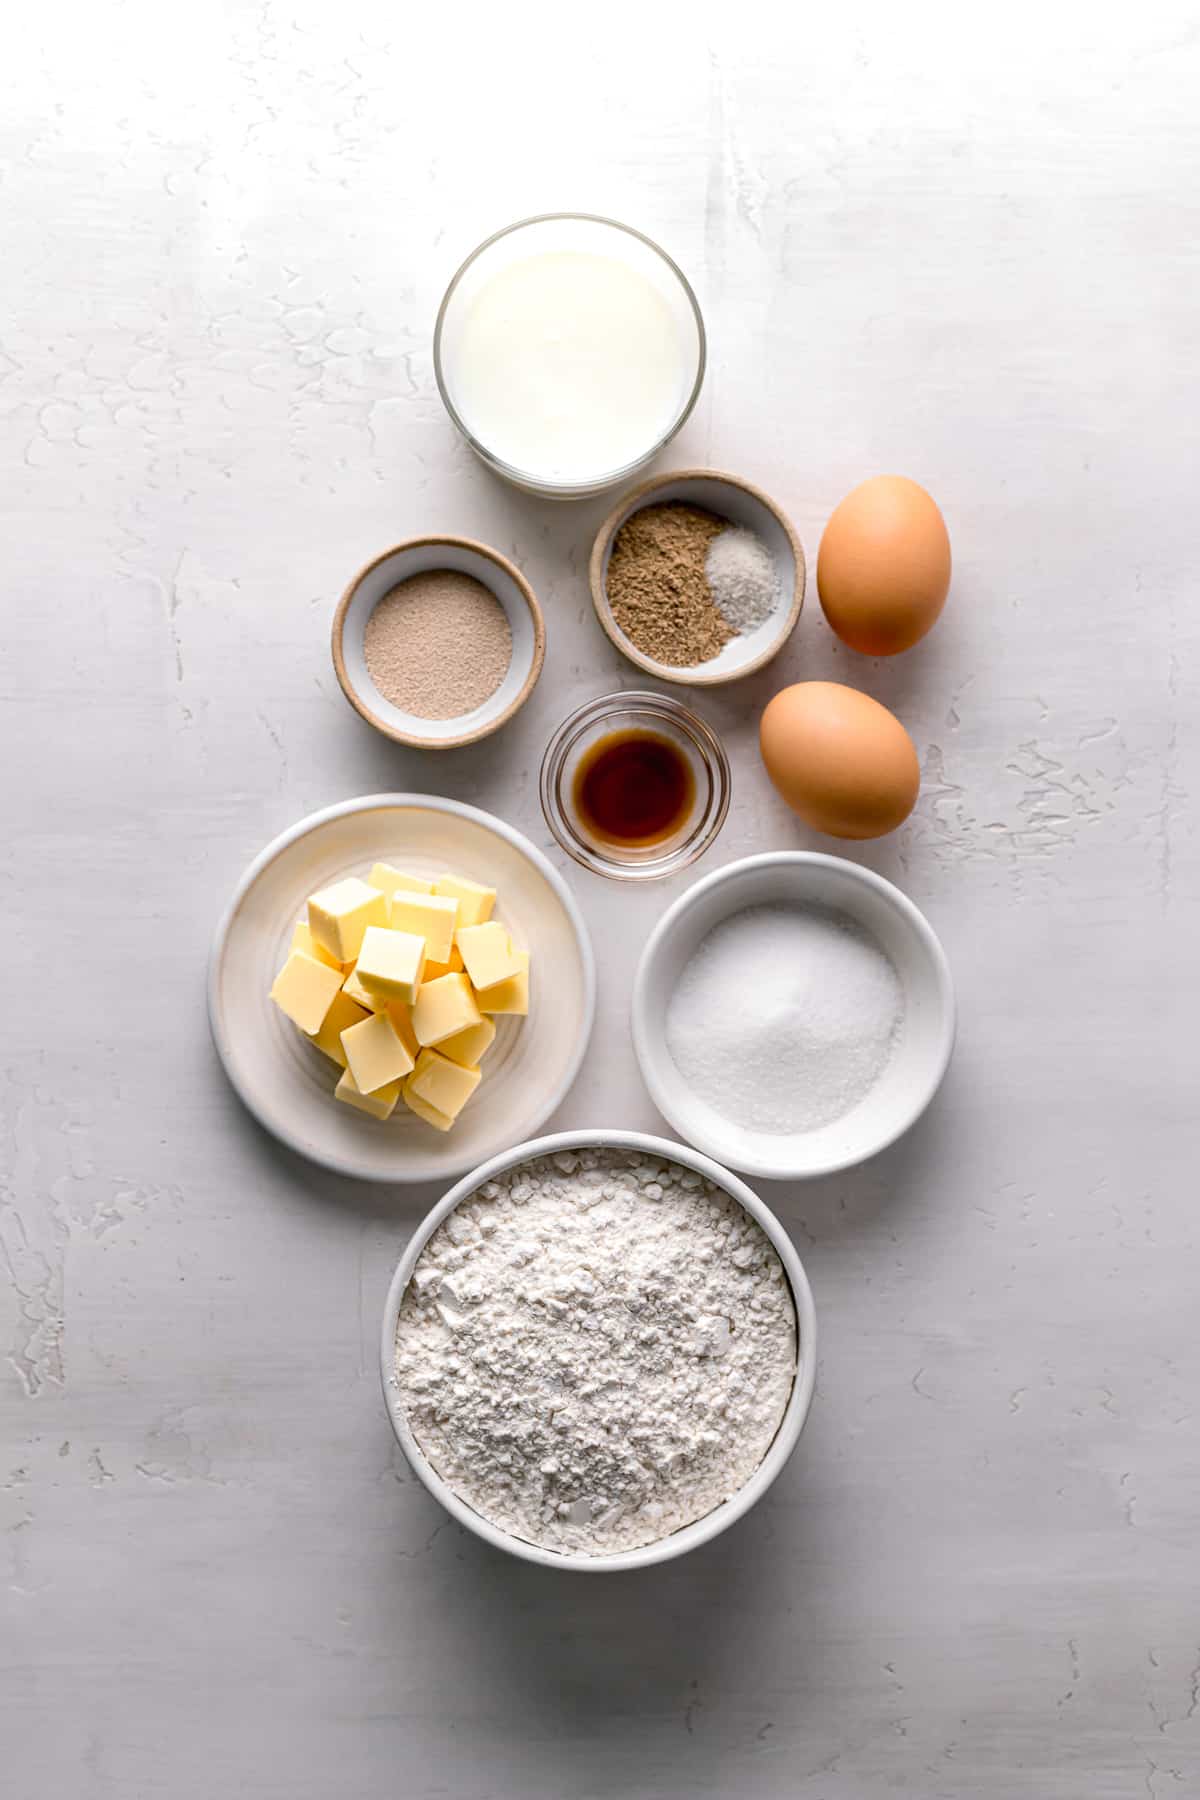 ingredients for brioche dough.